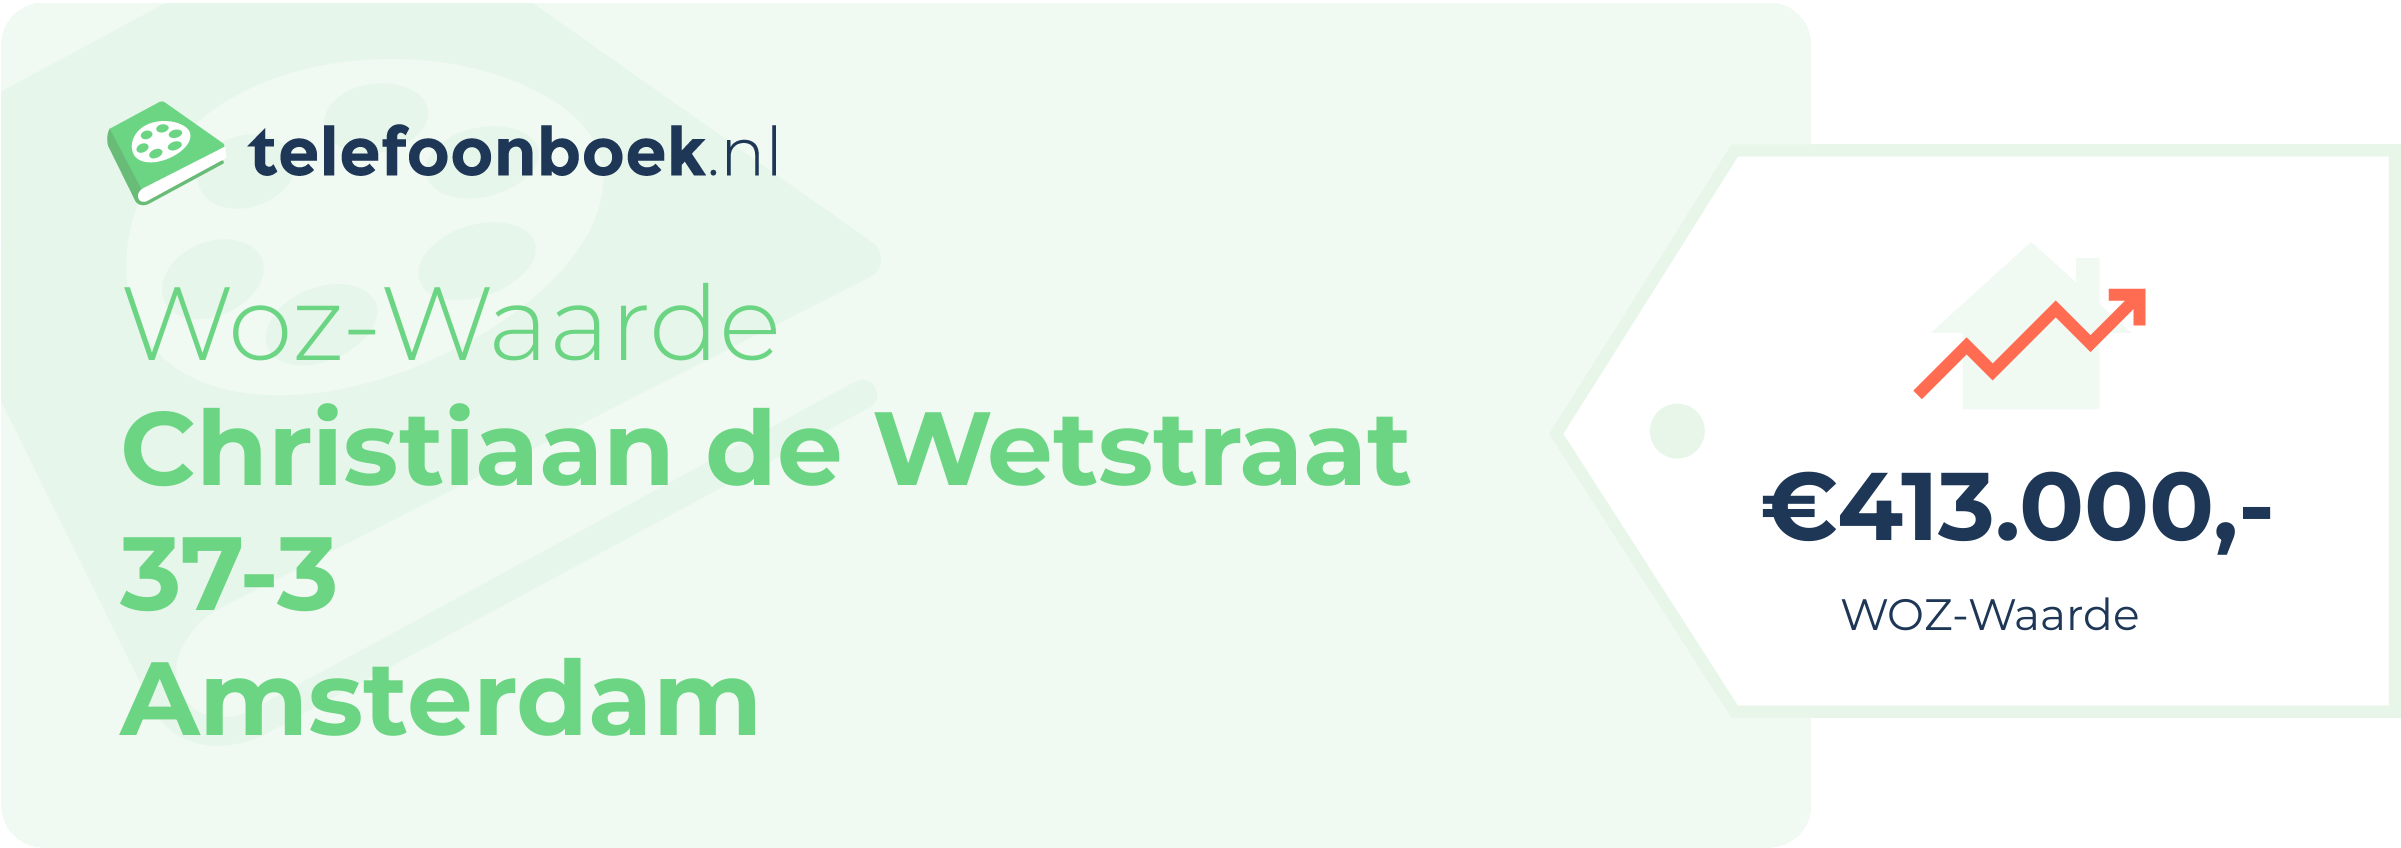 WOZ-waarde Christiaan De Wetstraat 37-3 Amsterdam